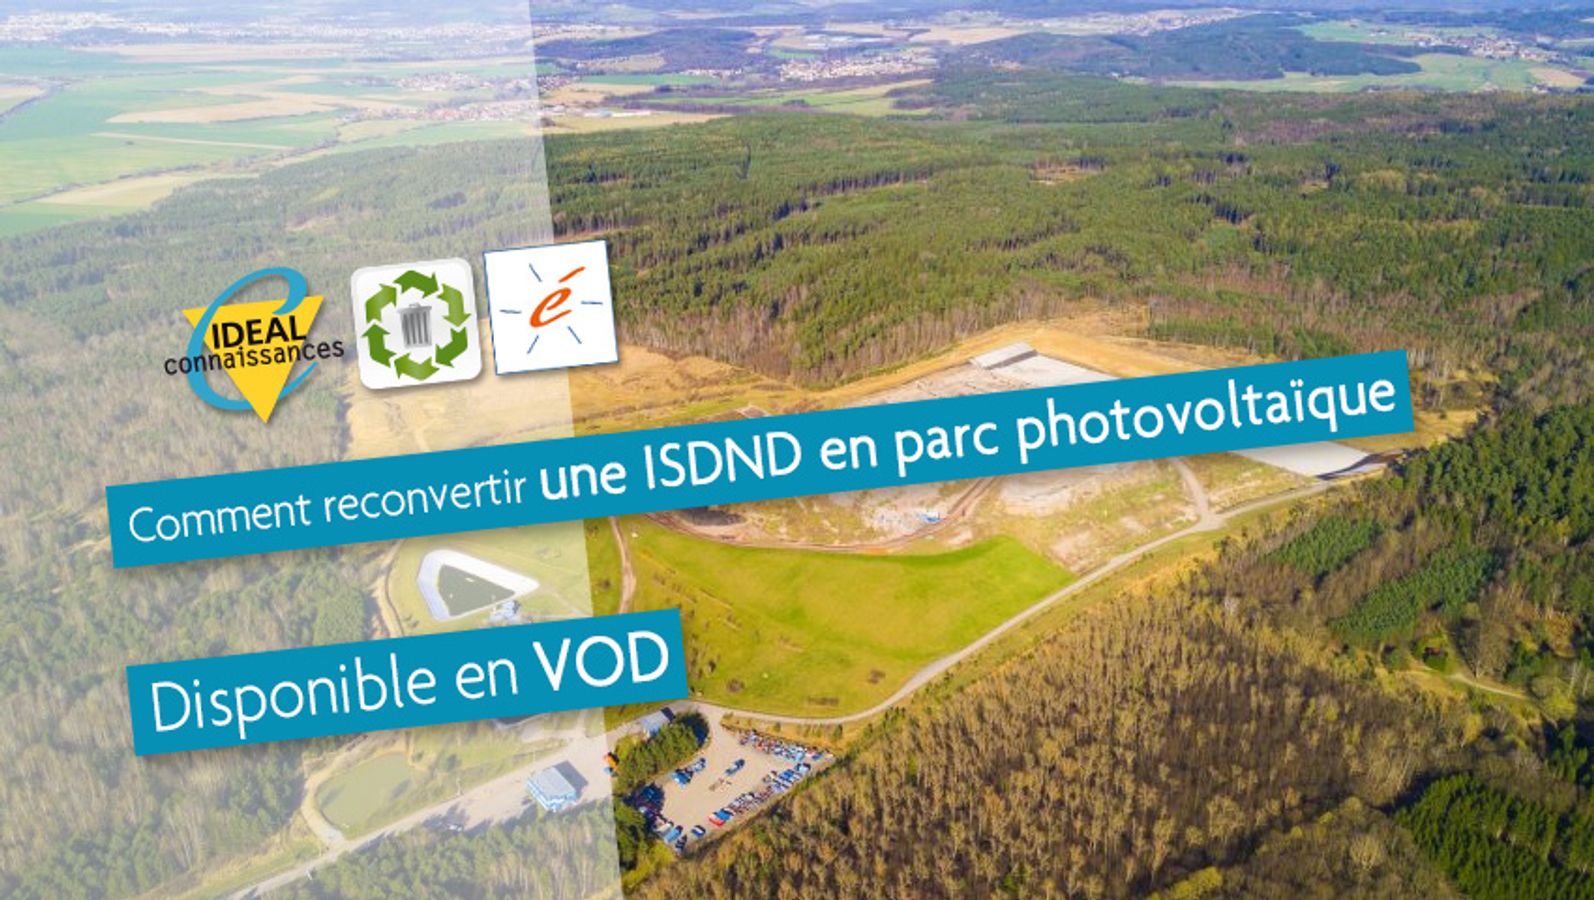 Comment reconvertir une ISDND en parc photovoltaïque ?